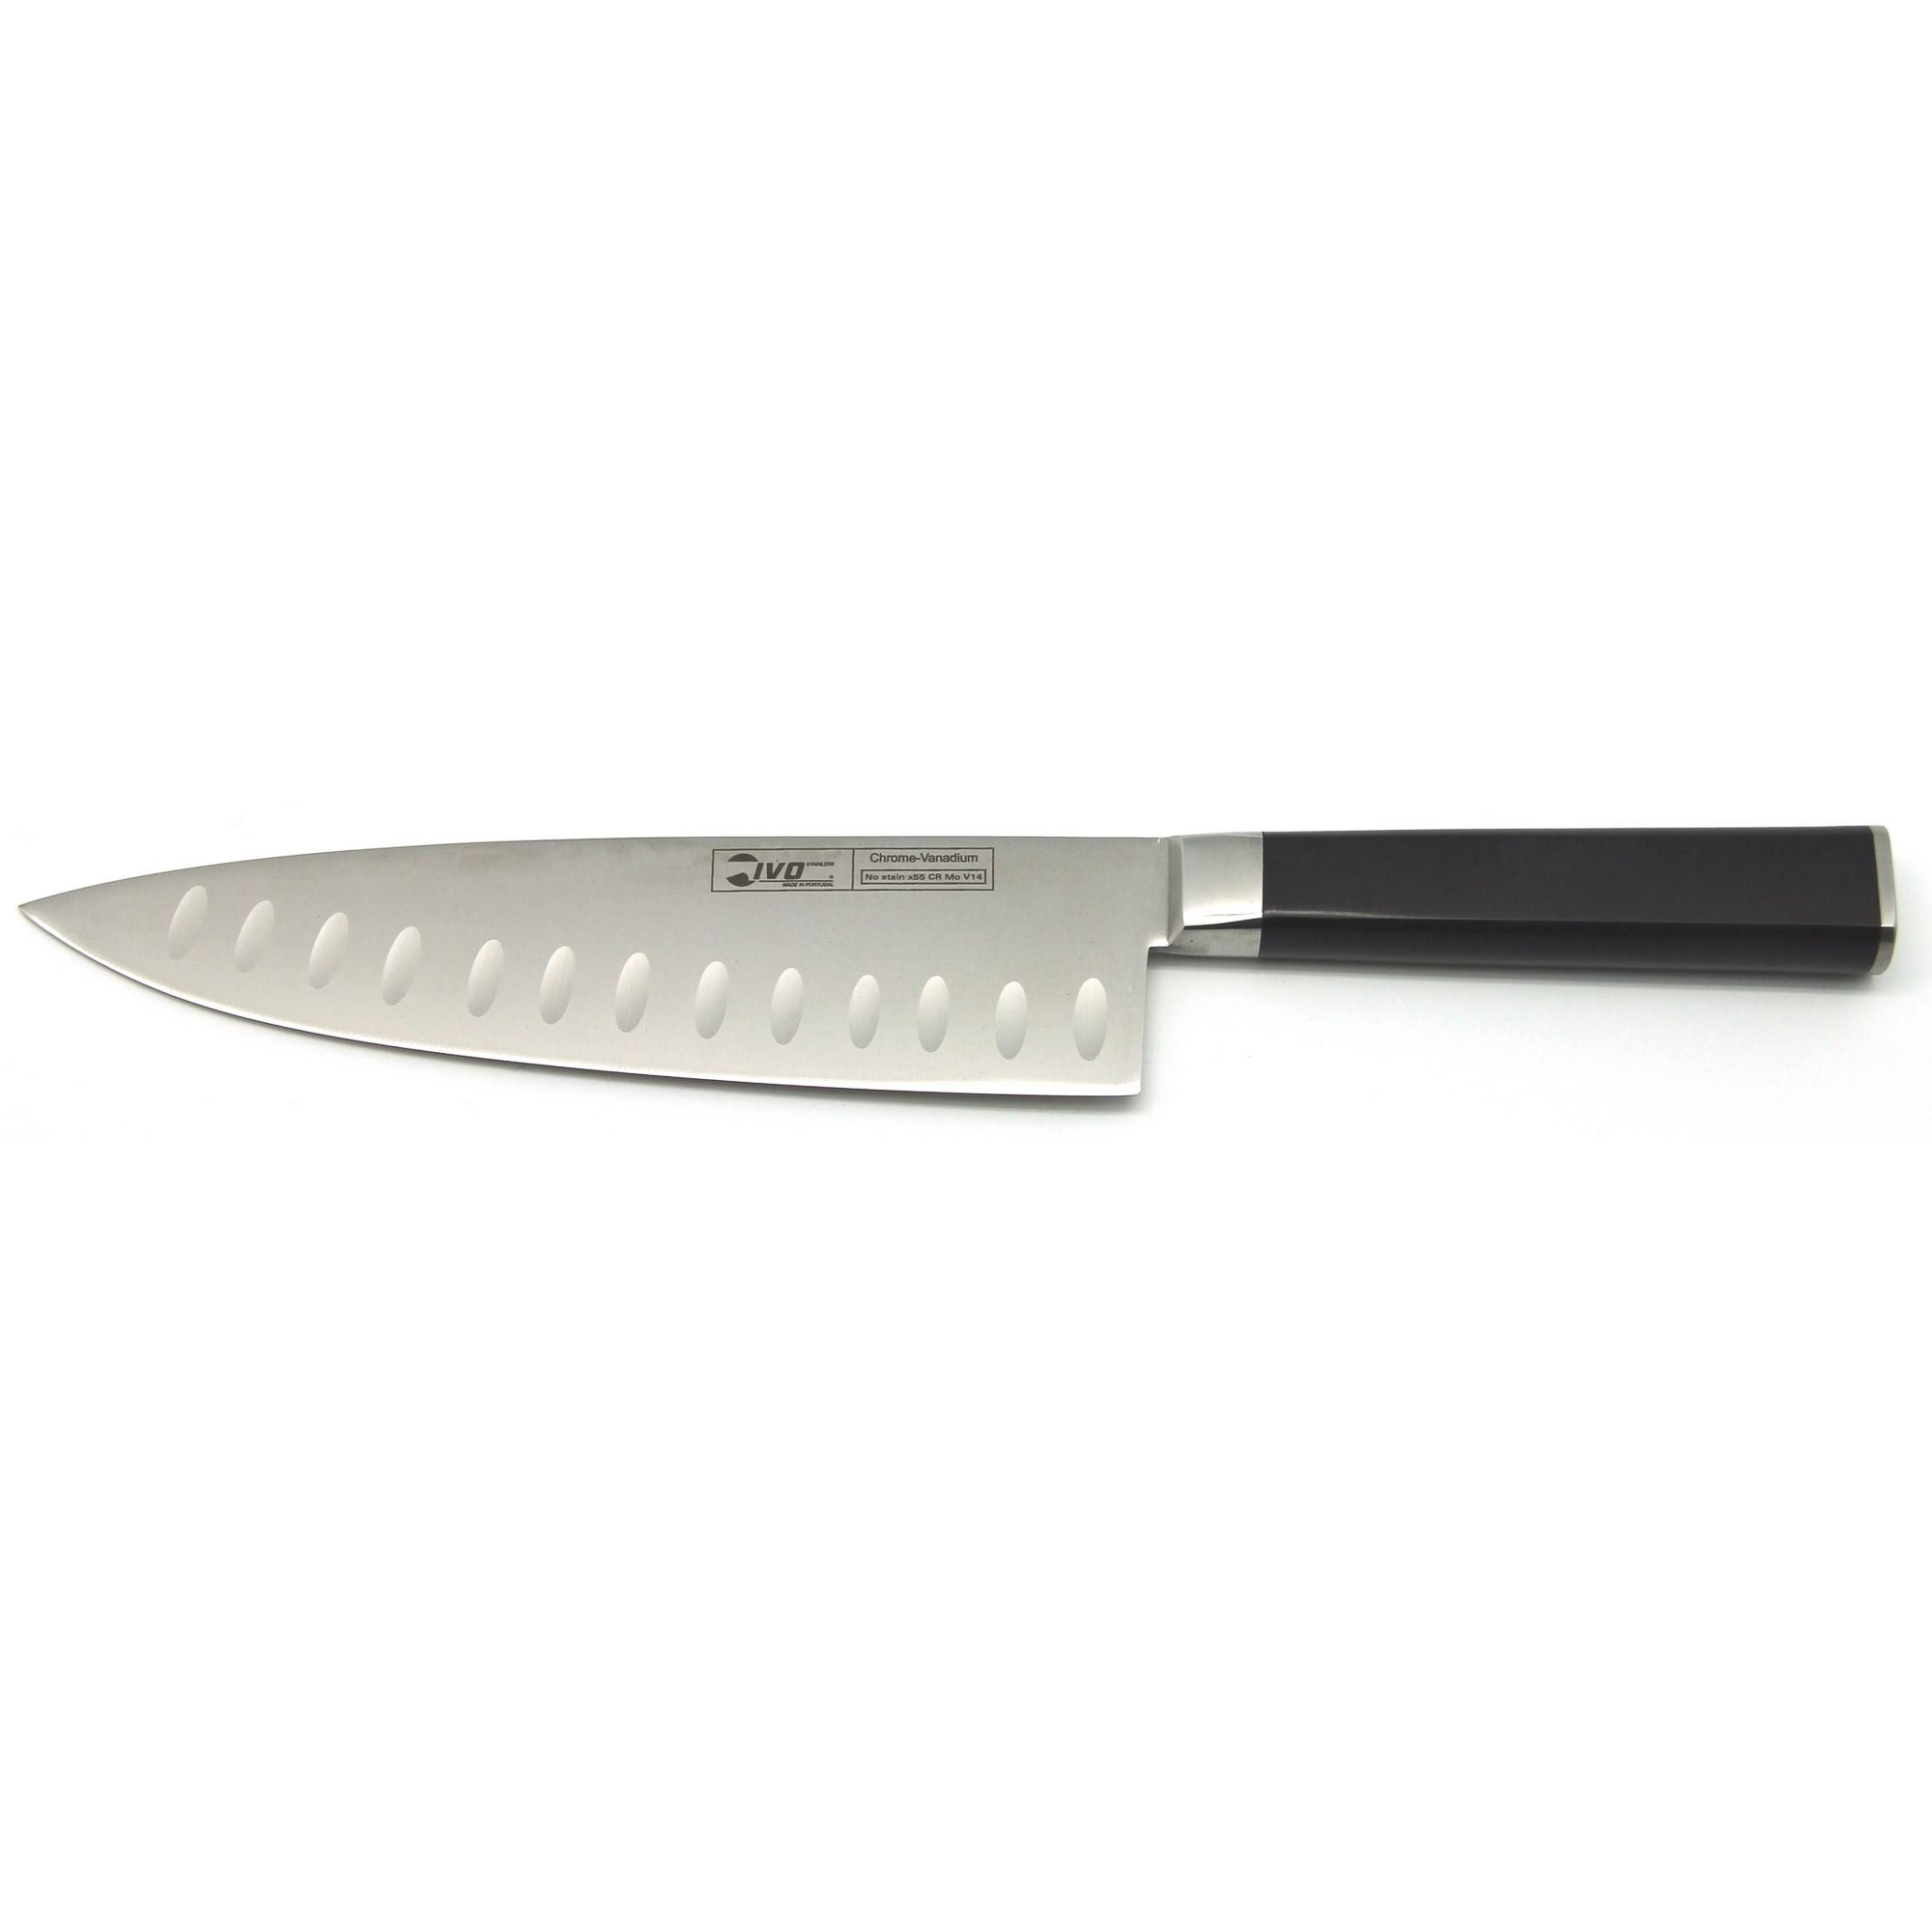 Нож поварской Ivo 43439.20 с канавками 20см нож для хлеба 20см virtu black ivo